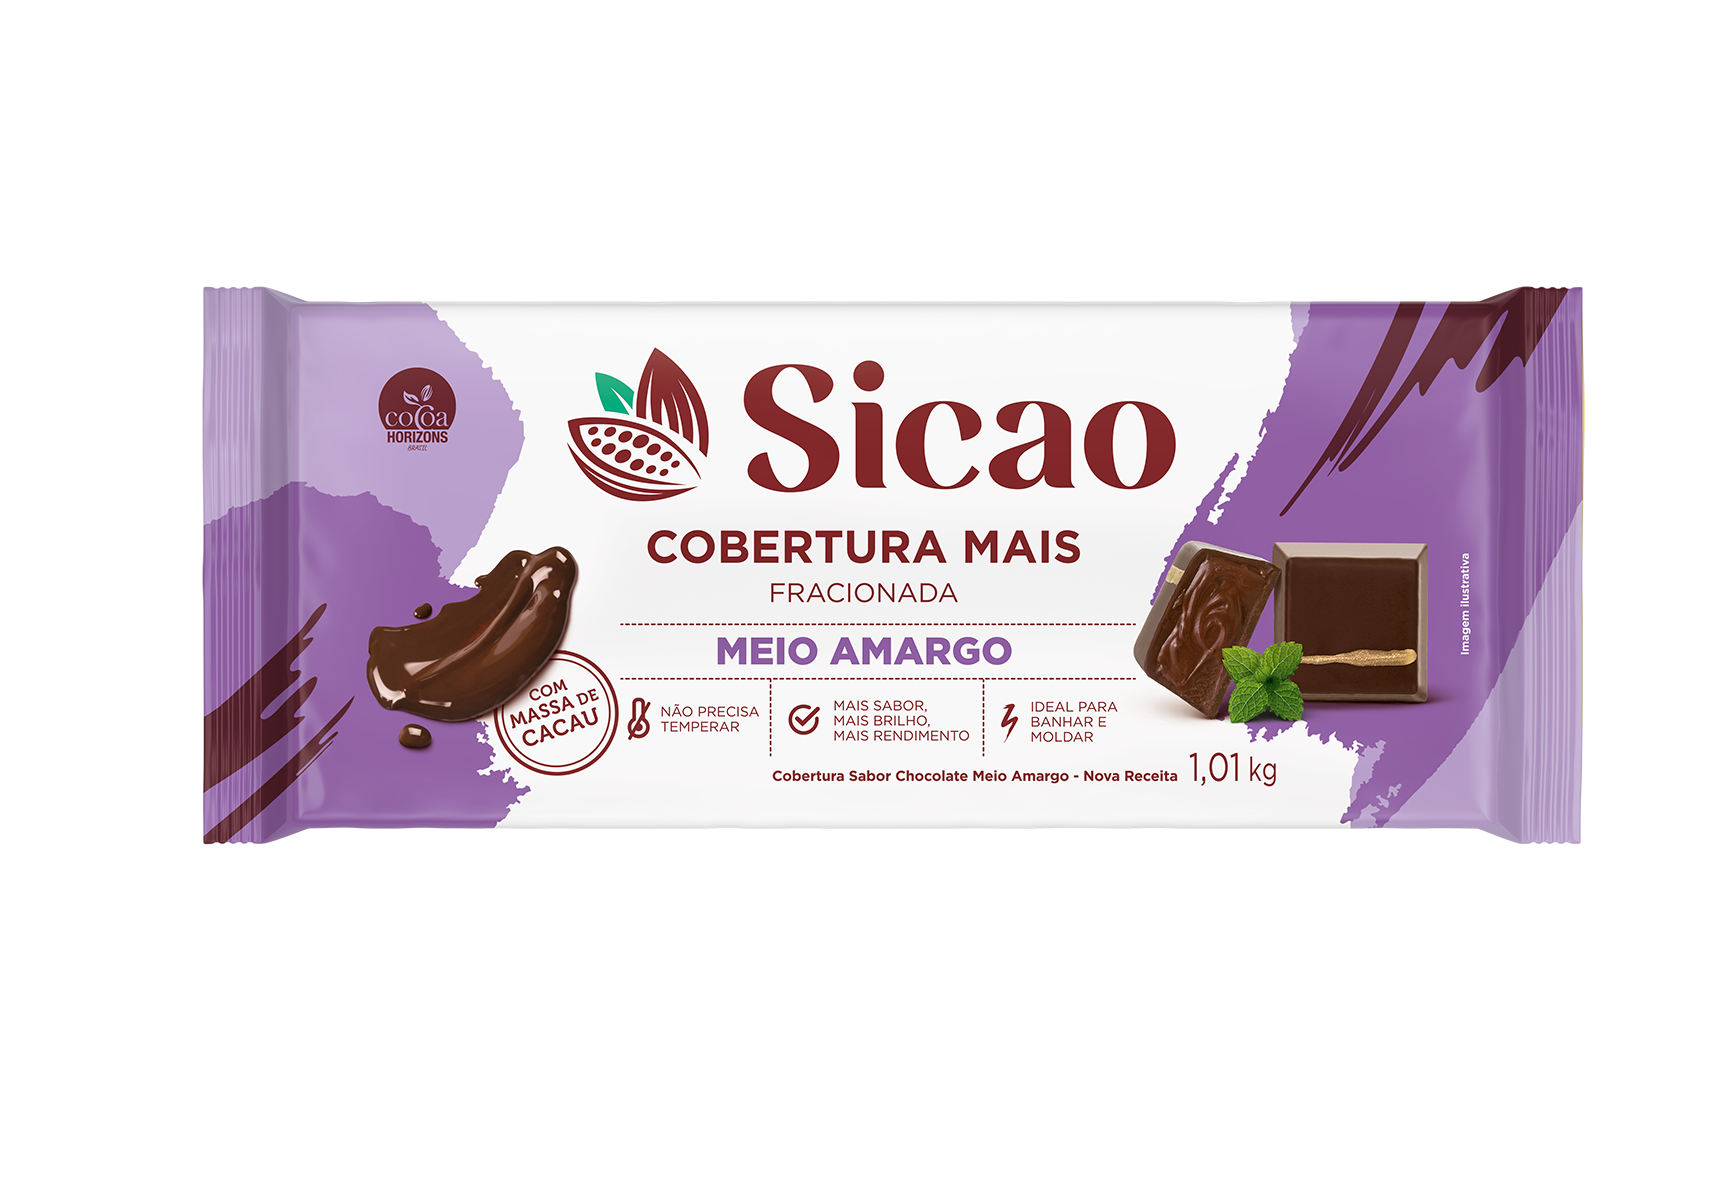 Cobertura Fracionada Sabor Chocolate Meio Amargo Sicao Mais - Barra 1,01 kg (1)